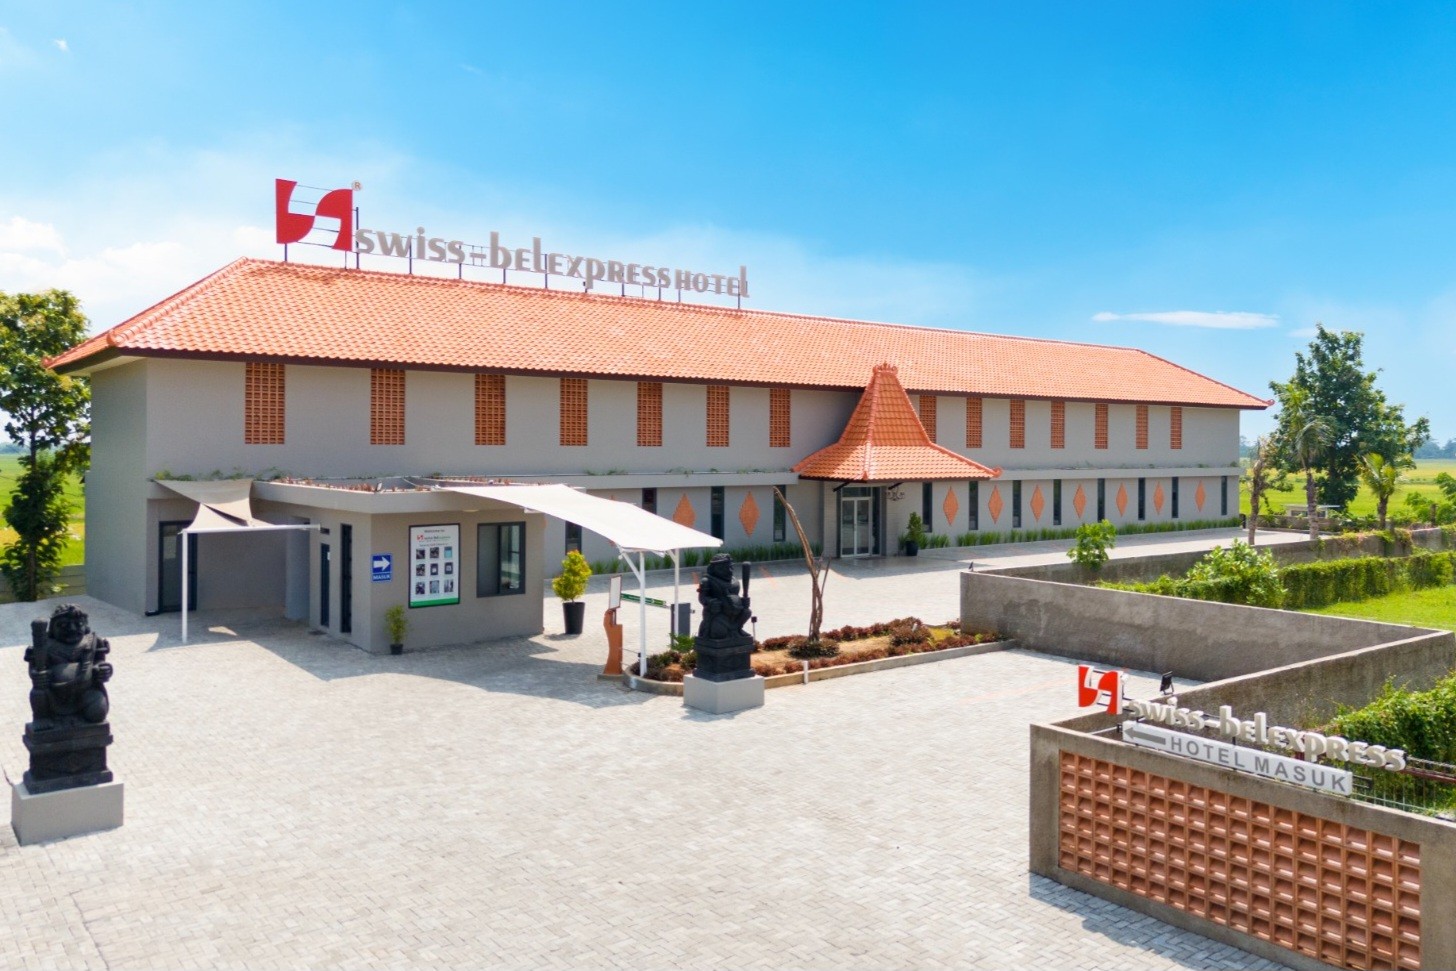 Swiss-Belexpress Rest Area Siapkan Penginapan yang Aman & Tenang Saat Libur Lebaran 